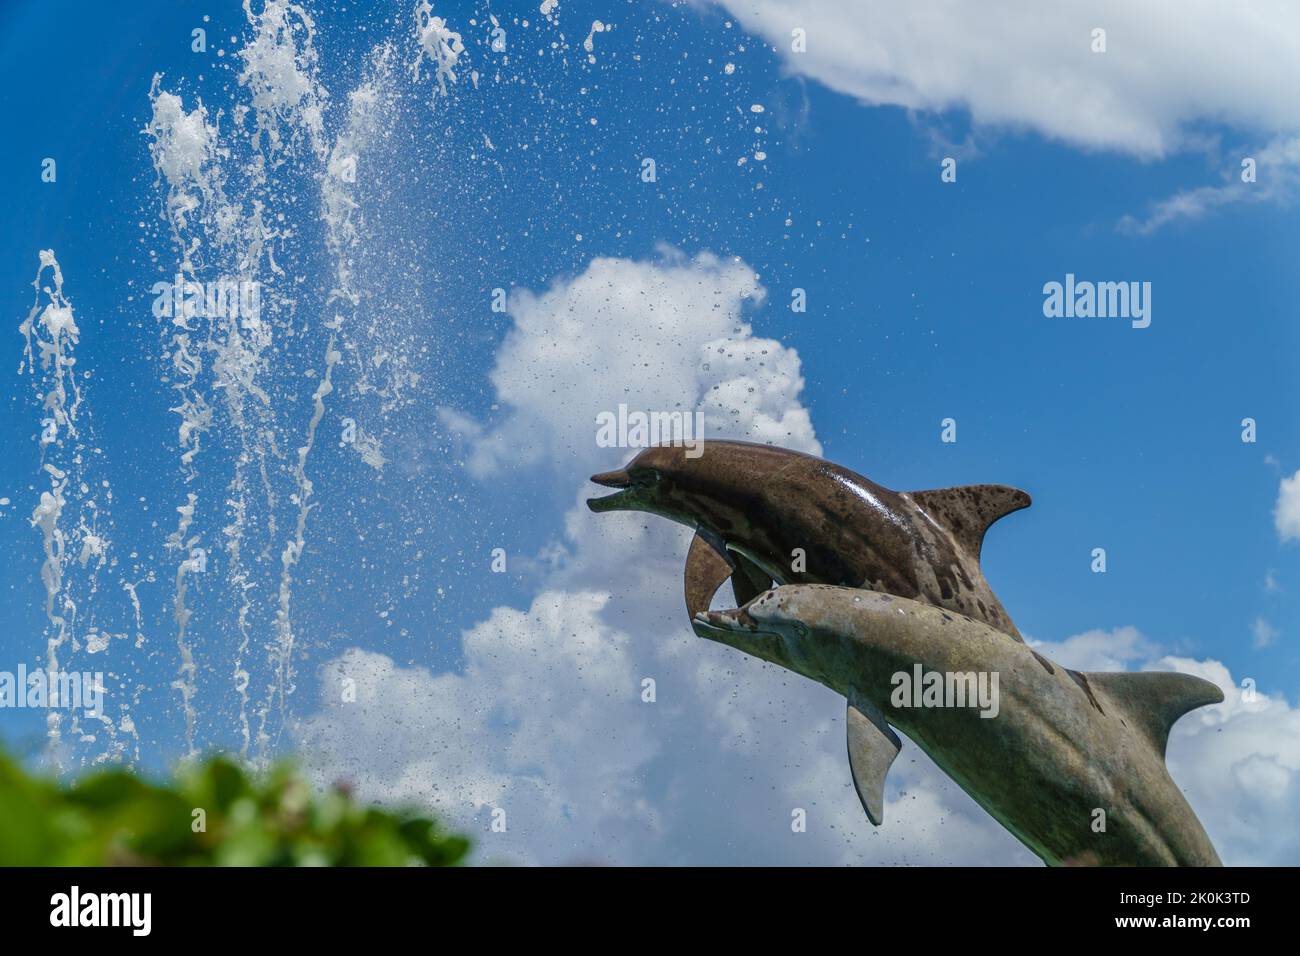 Sarasota, FL, EE.UU.-26 de noviembre de 2021: Icónica estatua de marsopas, también conocida como delfines, en Bayfront, un parque público. Foto de stock